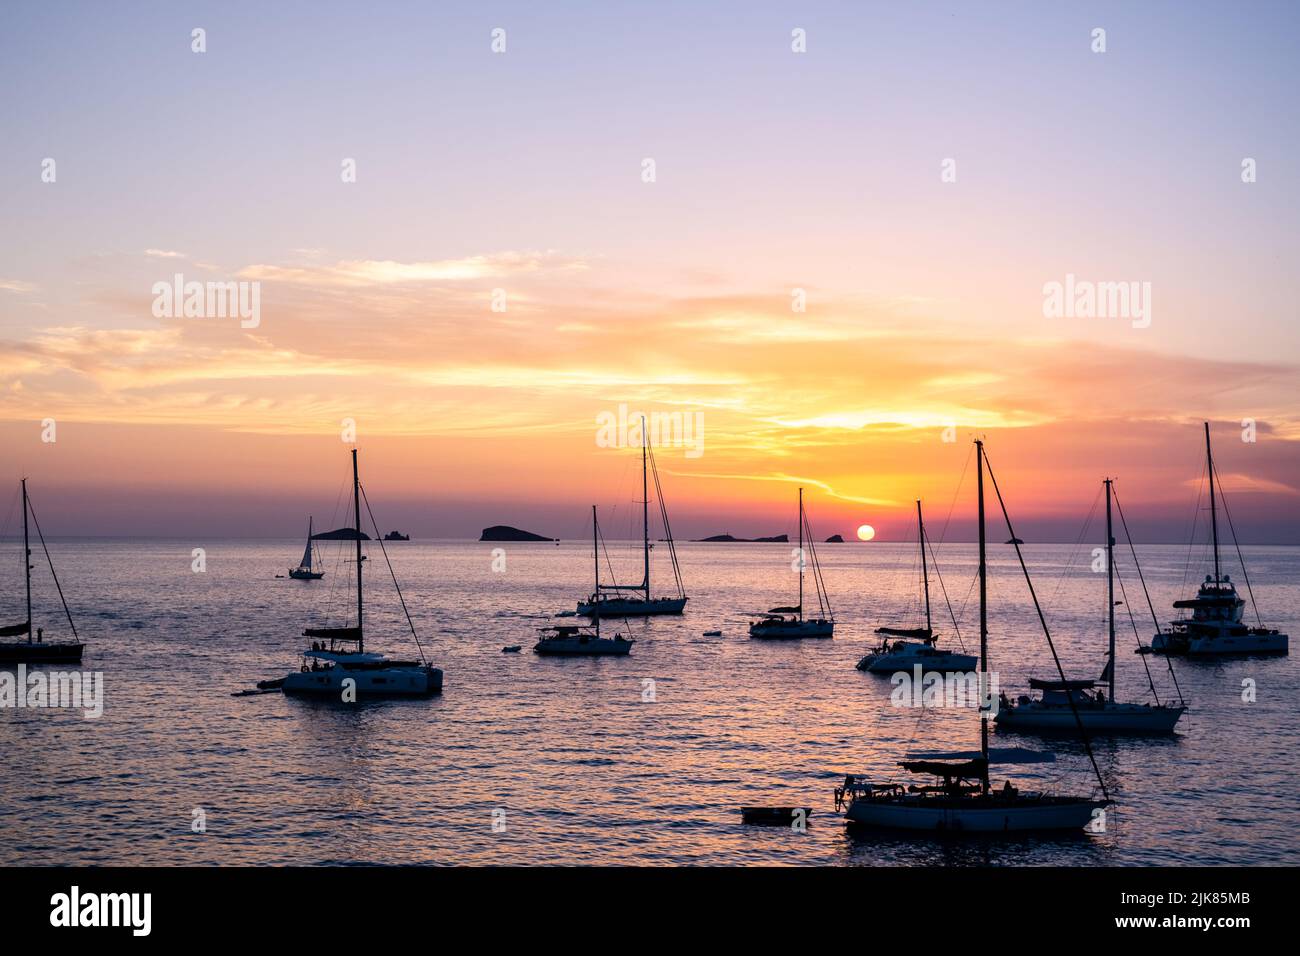 Plusieurs yachts et bateaux ancrés près de la côte se détendent en regardant le coucher du soleil à l'horizon des îles méditerranéennes. Banque D'Images